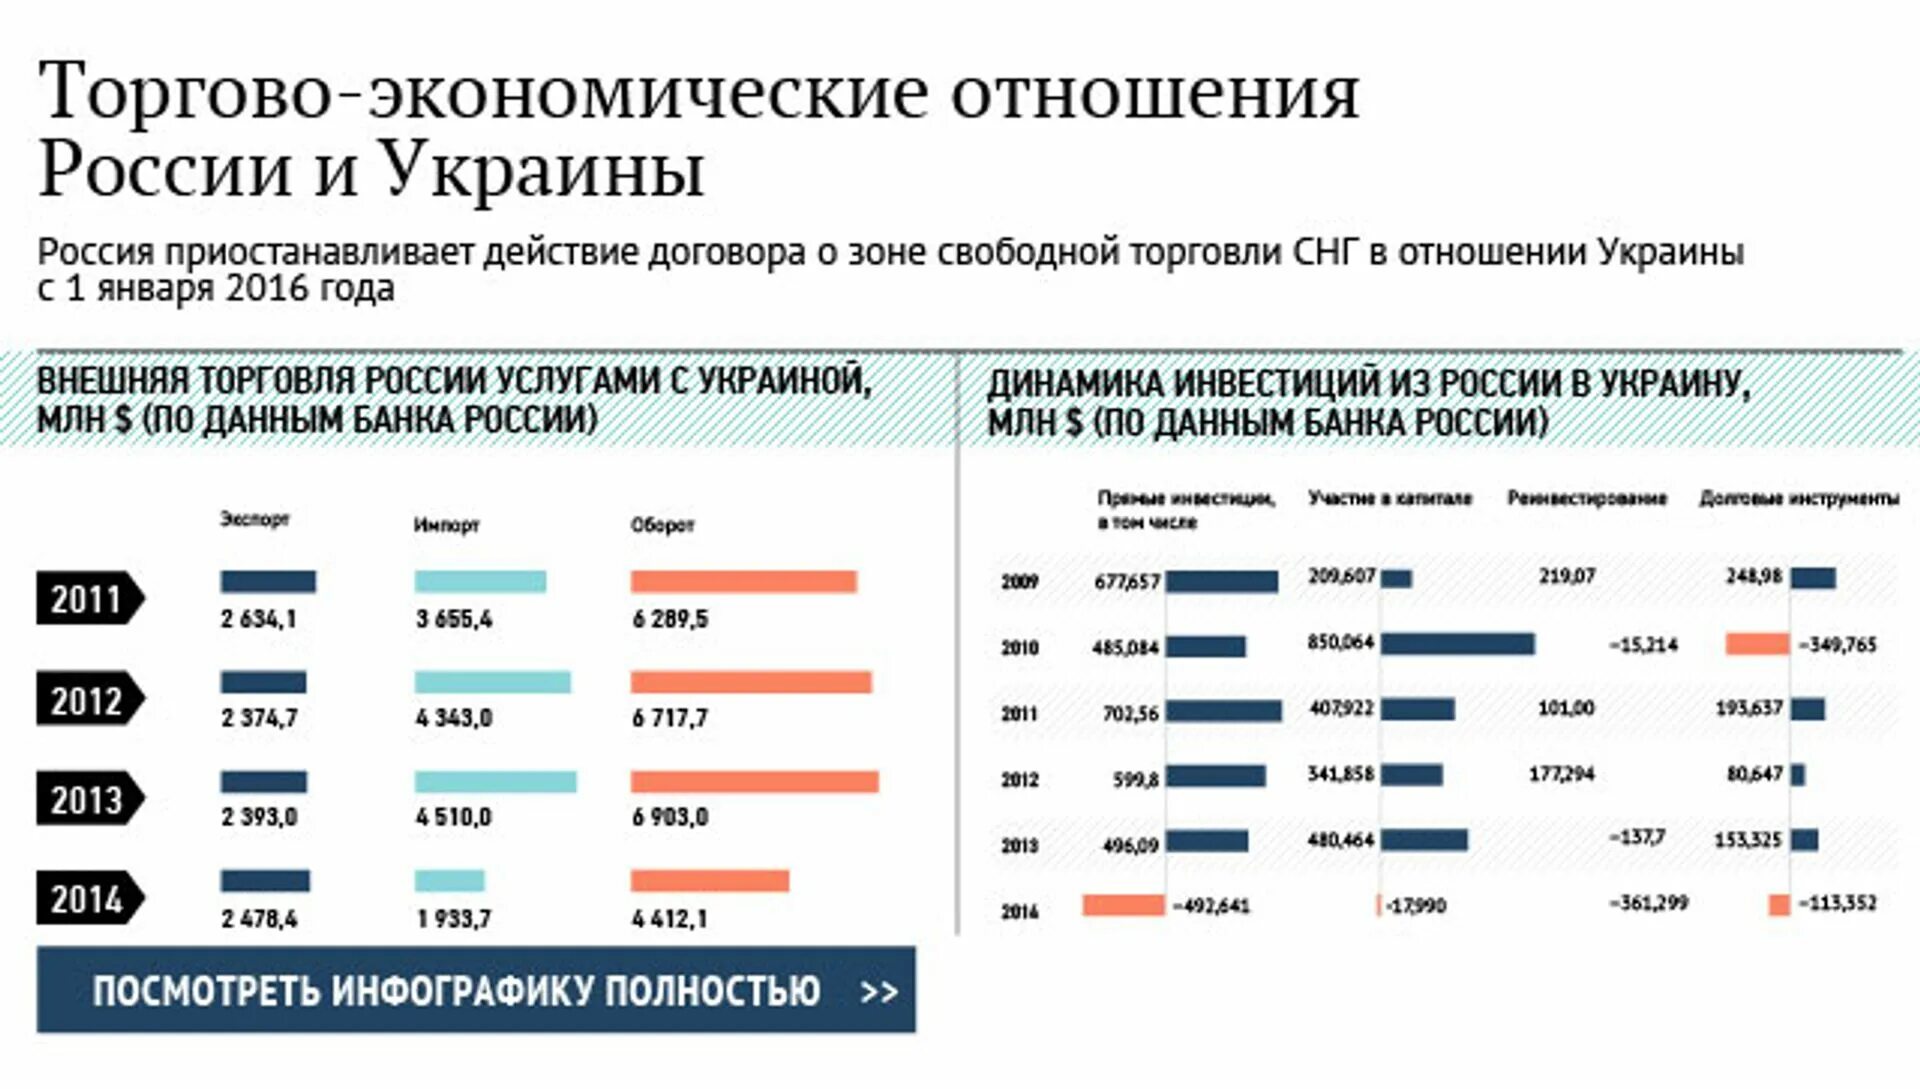 Соотношение россии и украины